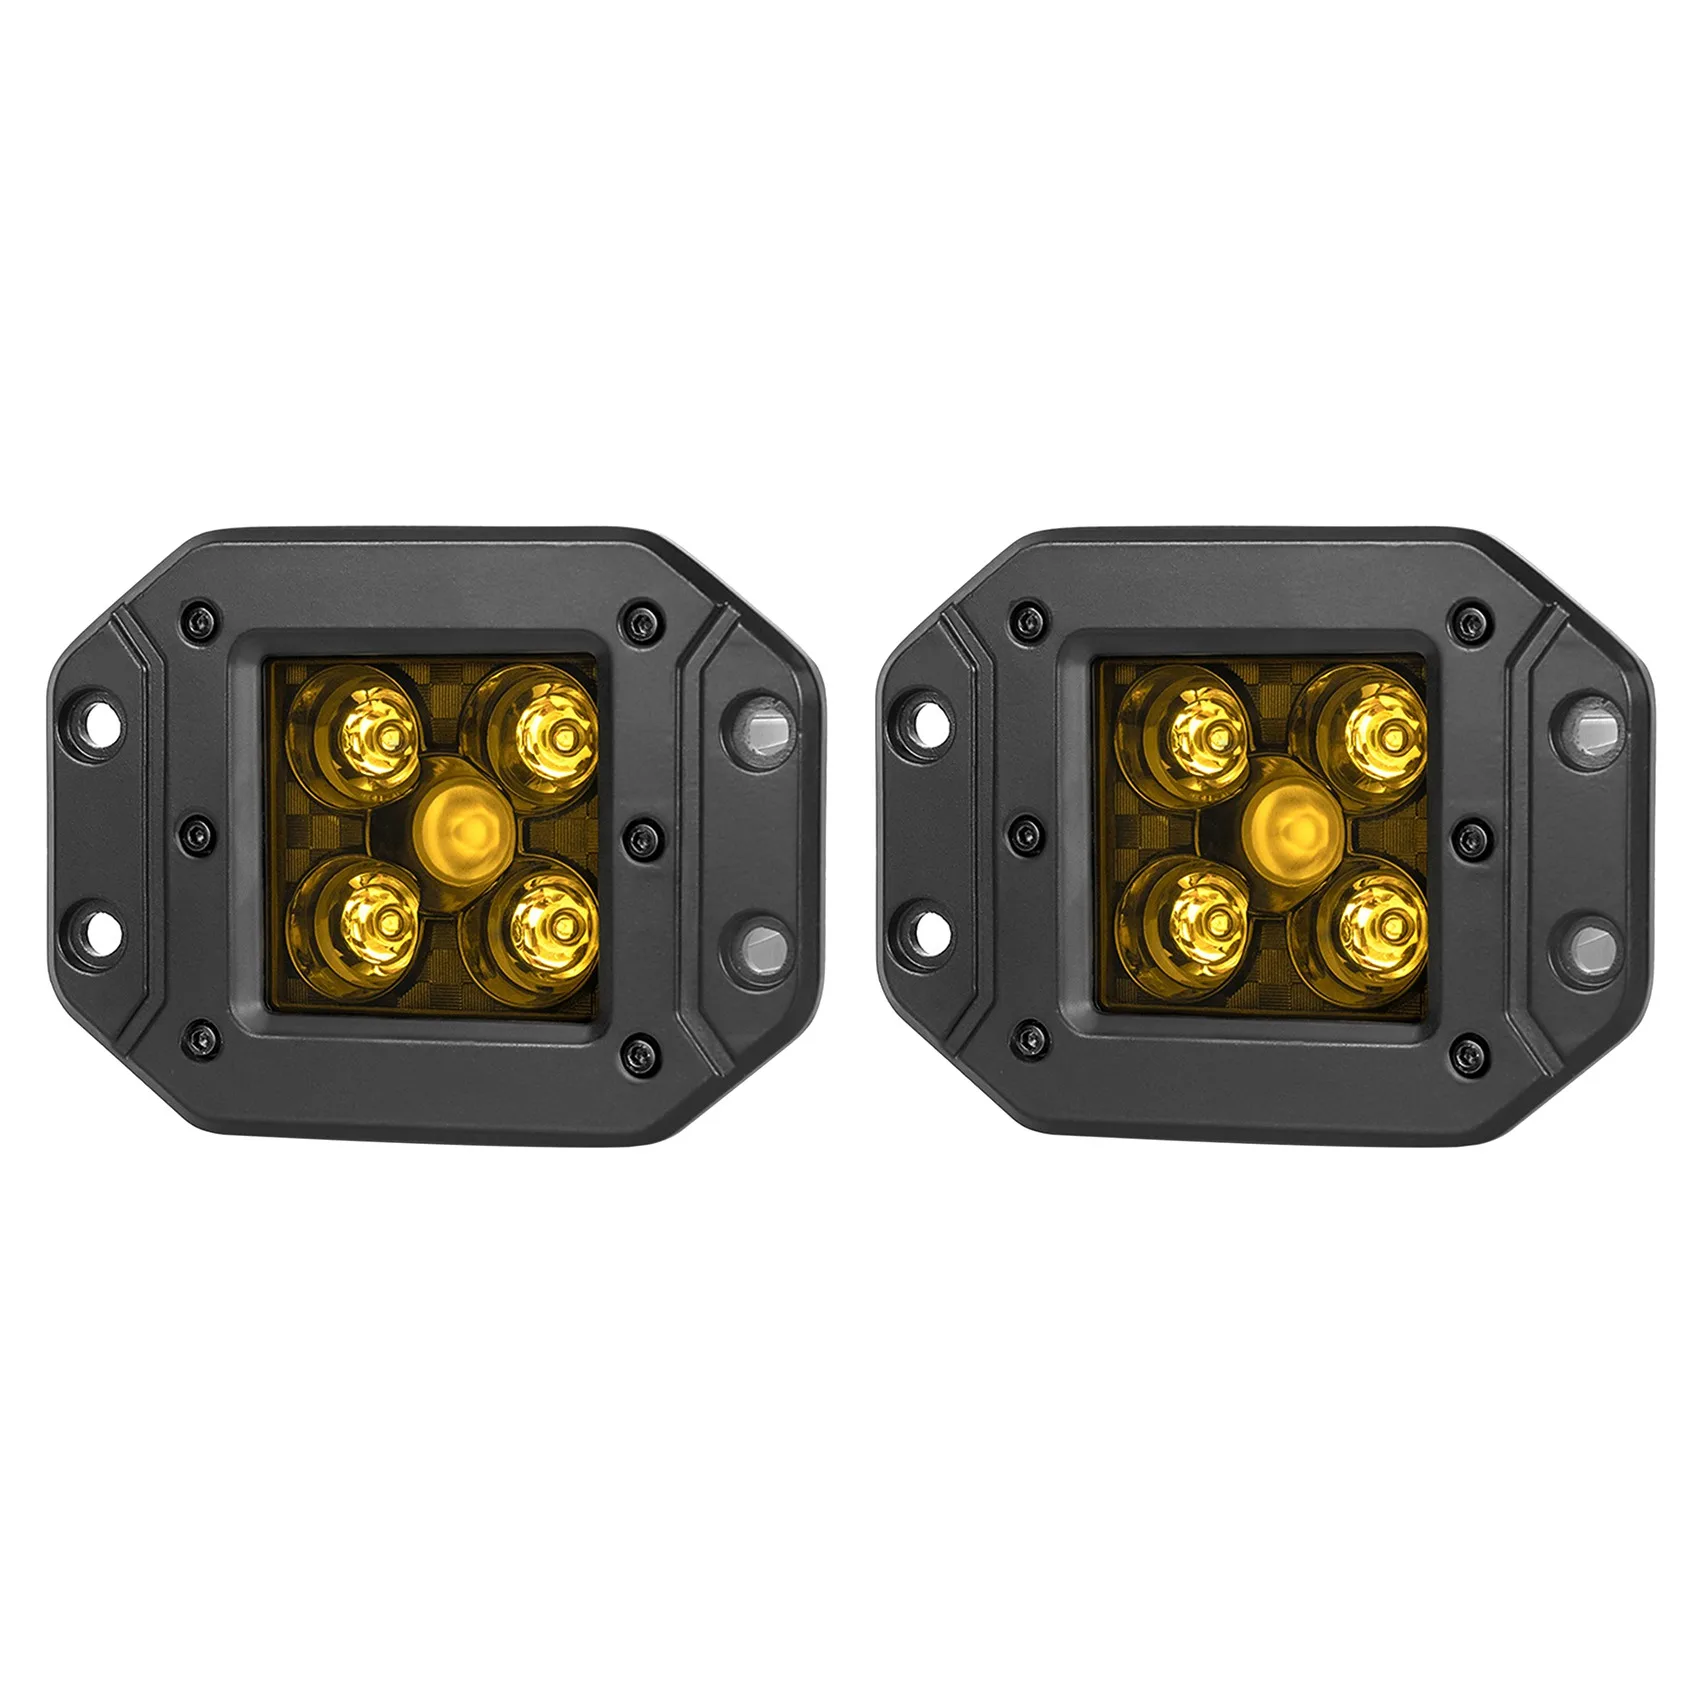 

Светодиодная лампа для внедорожника, квадратный противотуманный свет желтого цвета, 25 Вт, для автомобилей, грузовиков, квадроциклов, прицеп...